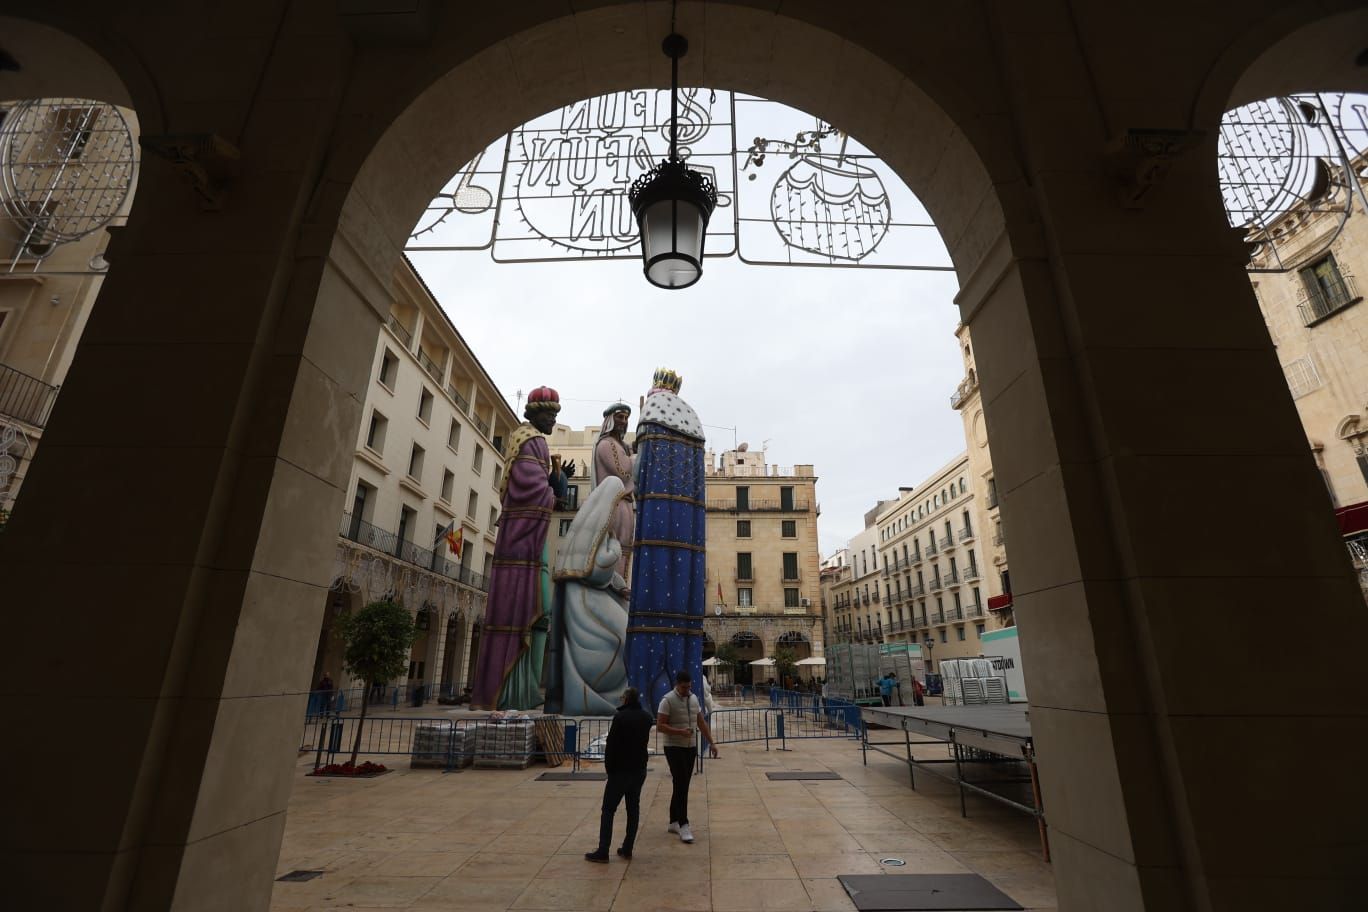 Se armó el Belén en Alicante, así luce el monumental nacimiento en la Plaza del Ayuntamiento